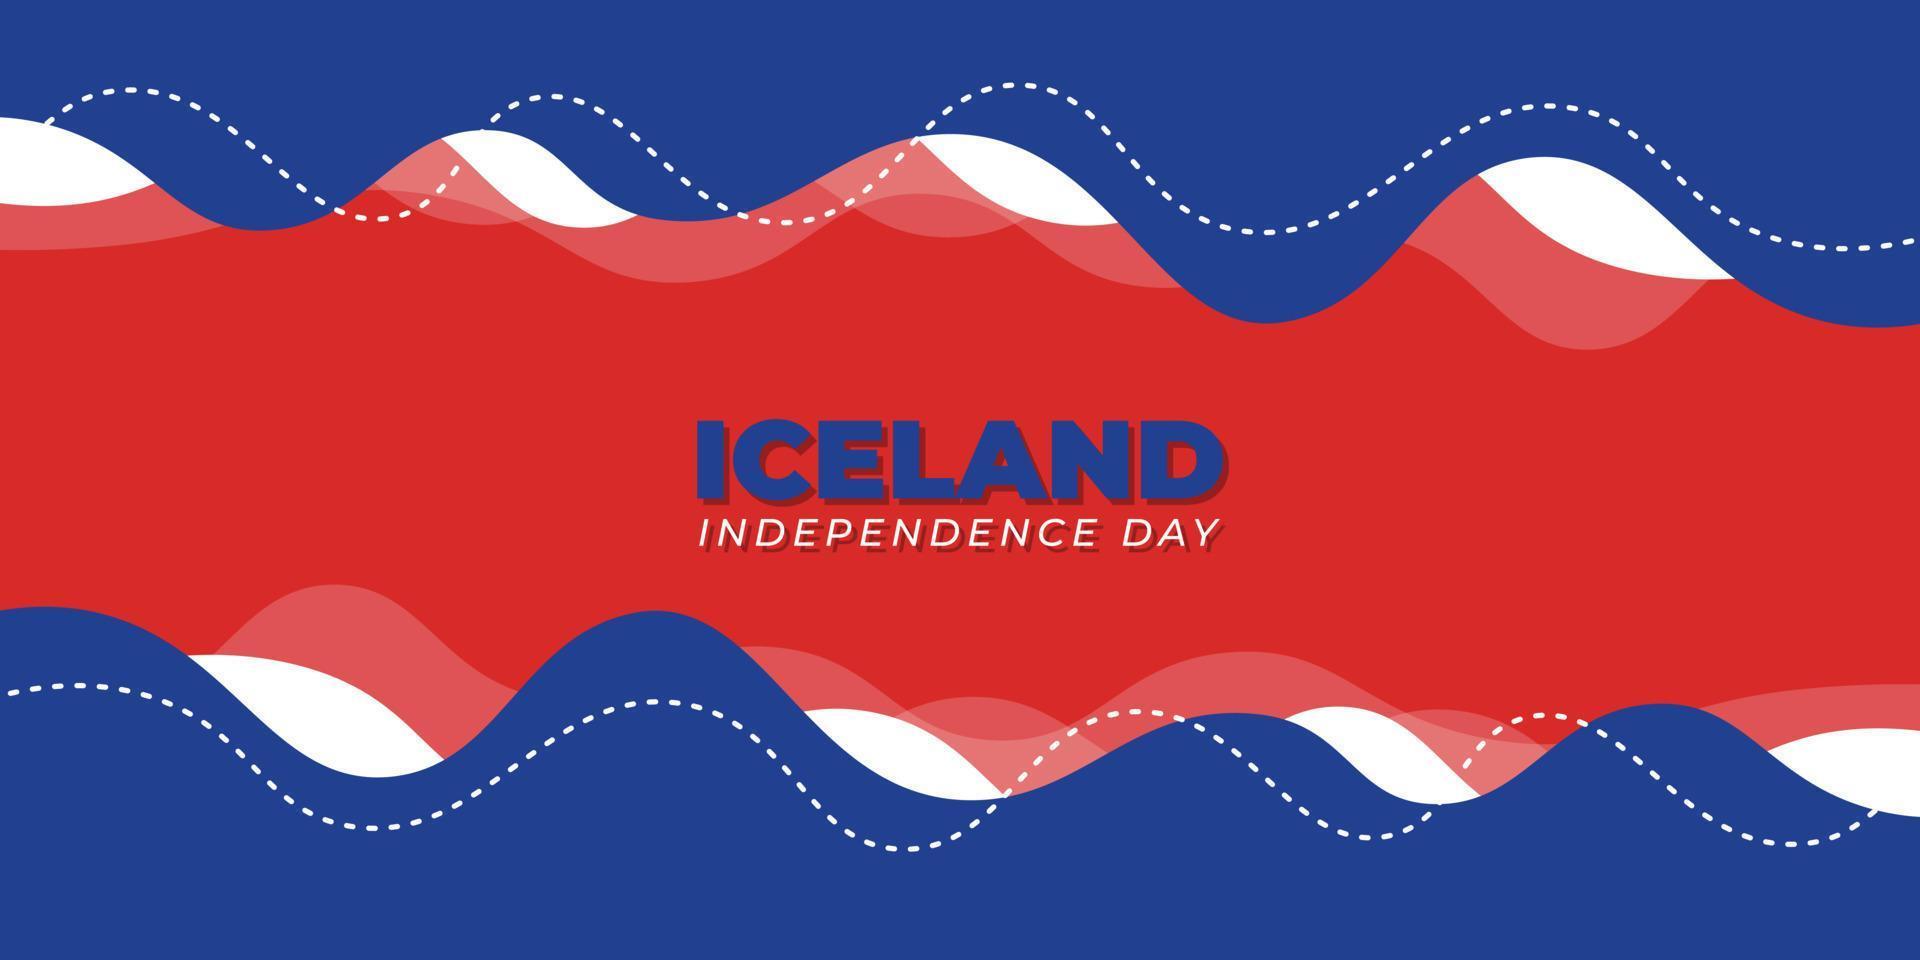 conception de la fête de l'indépendance de l'islande avec un design de fond rouge et bleu vecteur